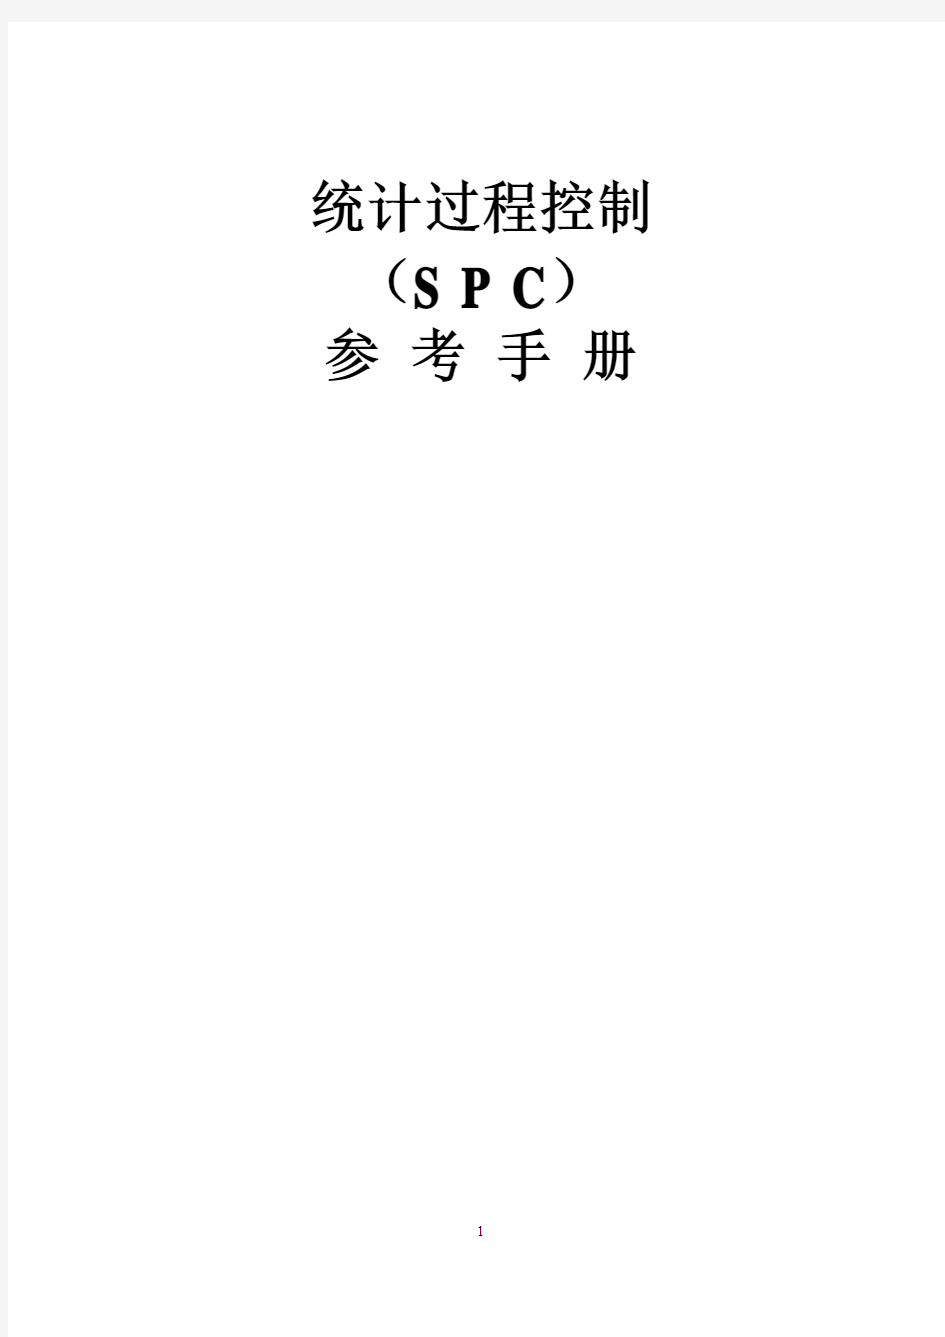 统计过程控制(SPC)手册